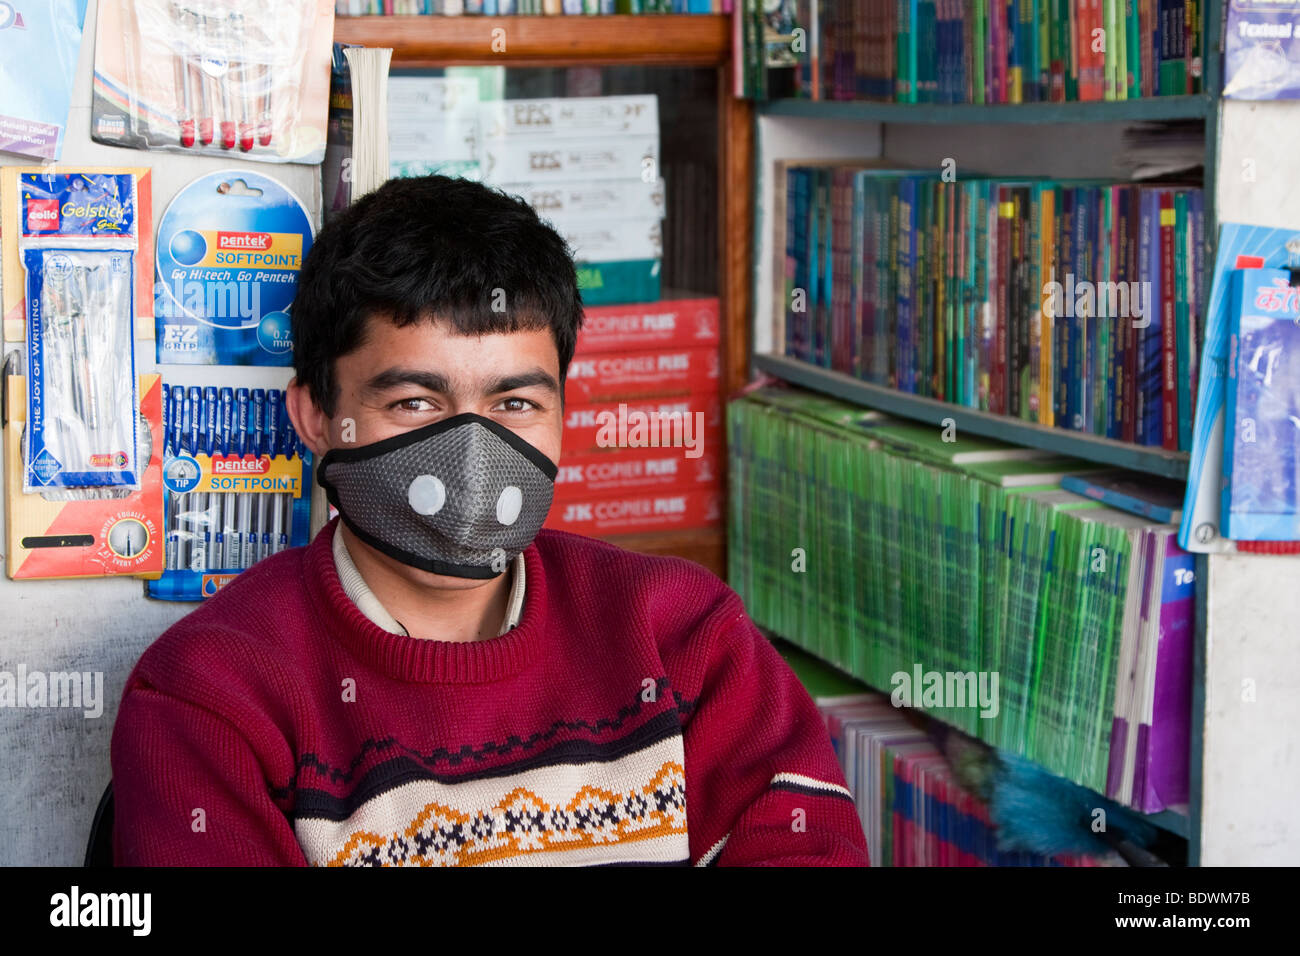 Katmandou, Népal. Vendeur magasin de livre népalais, le port de masque respiratoire de protection contre la pollution de l'air. Banque D'Images